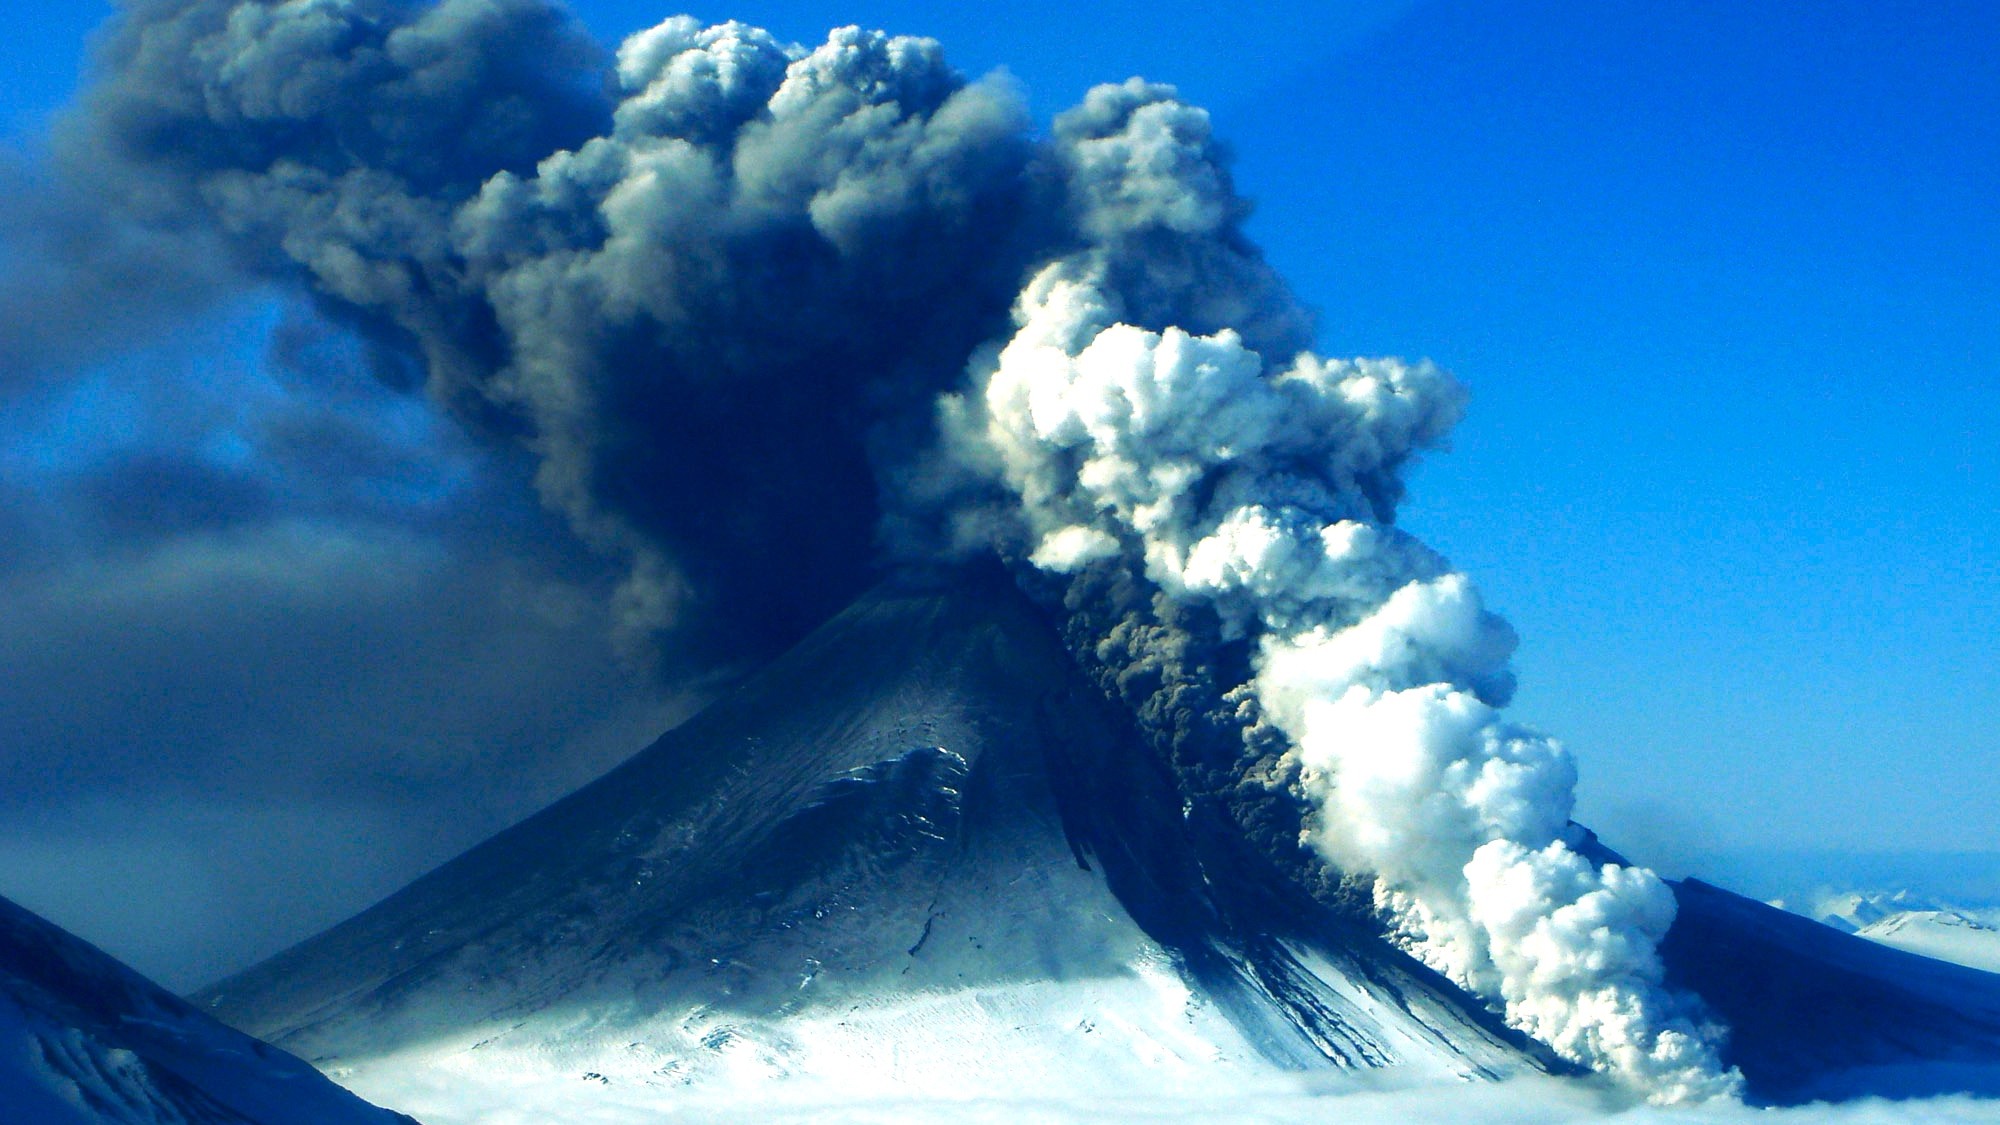 Atividade vulcânica do Pavlof é monitorada pelo Observatório Vulcânico do Alasca (Foto: Flip TV)